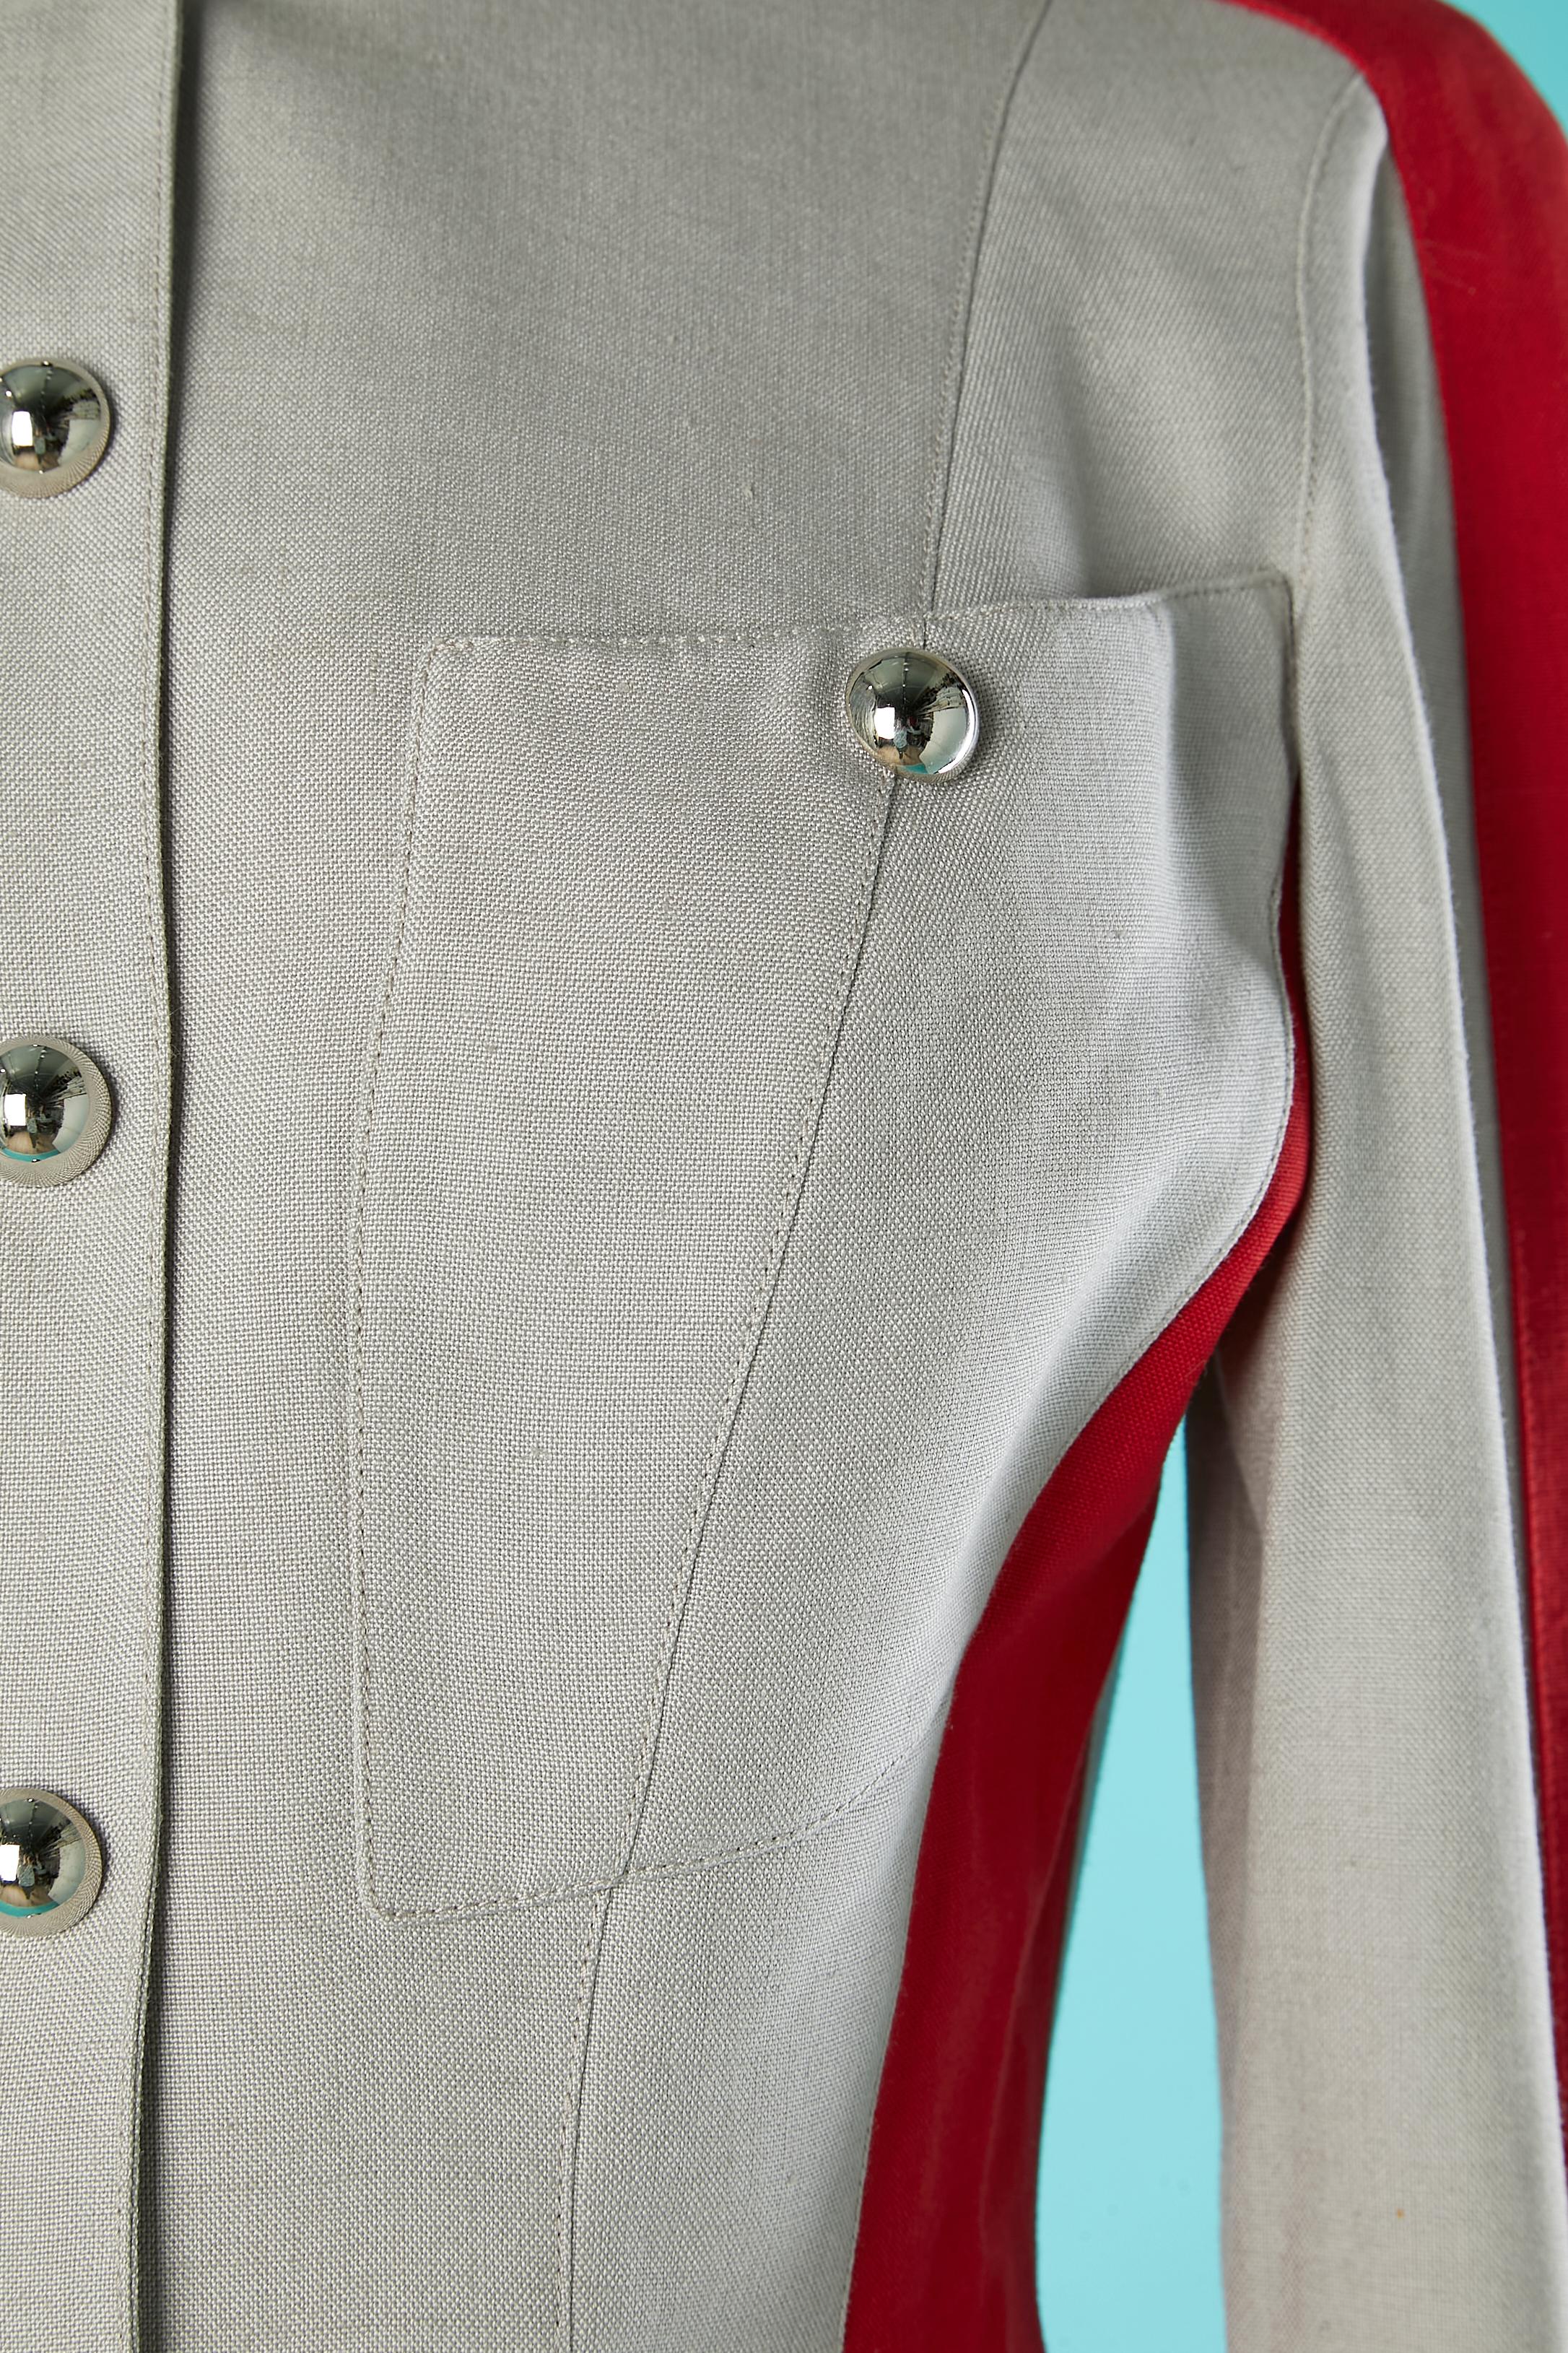 Combinaison jupe rouge et grise style officier. Mousqueton au milieu du devant + sur les poches du buste  + boutons-pression aux poignets. 
Composition du tissu principal : 78% rayonne, 22% lin. Pas d'étiquette de composition de la doublure mais